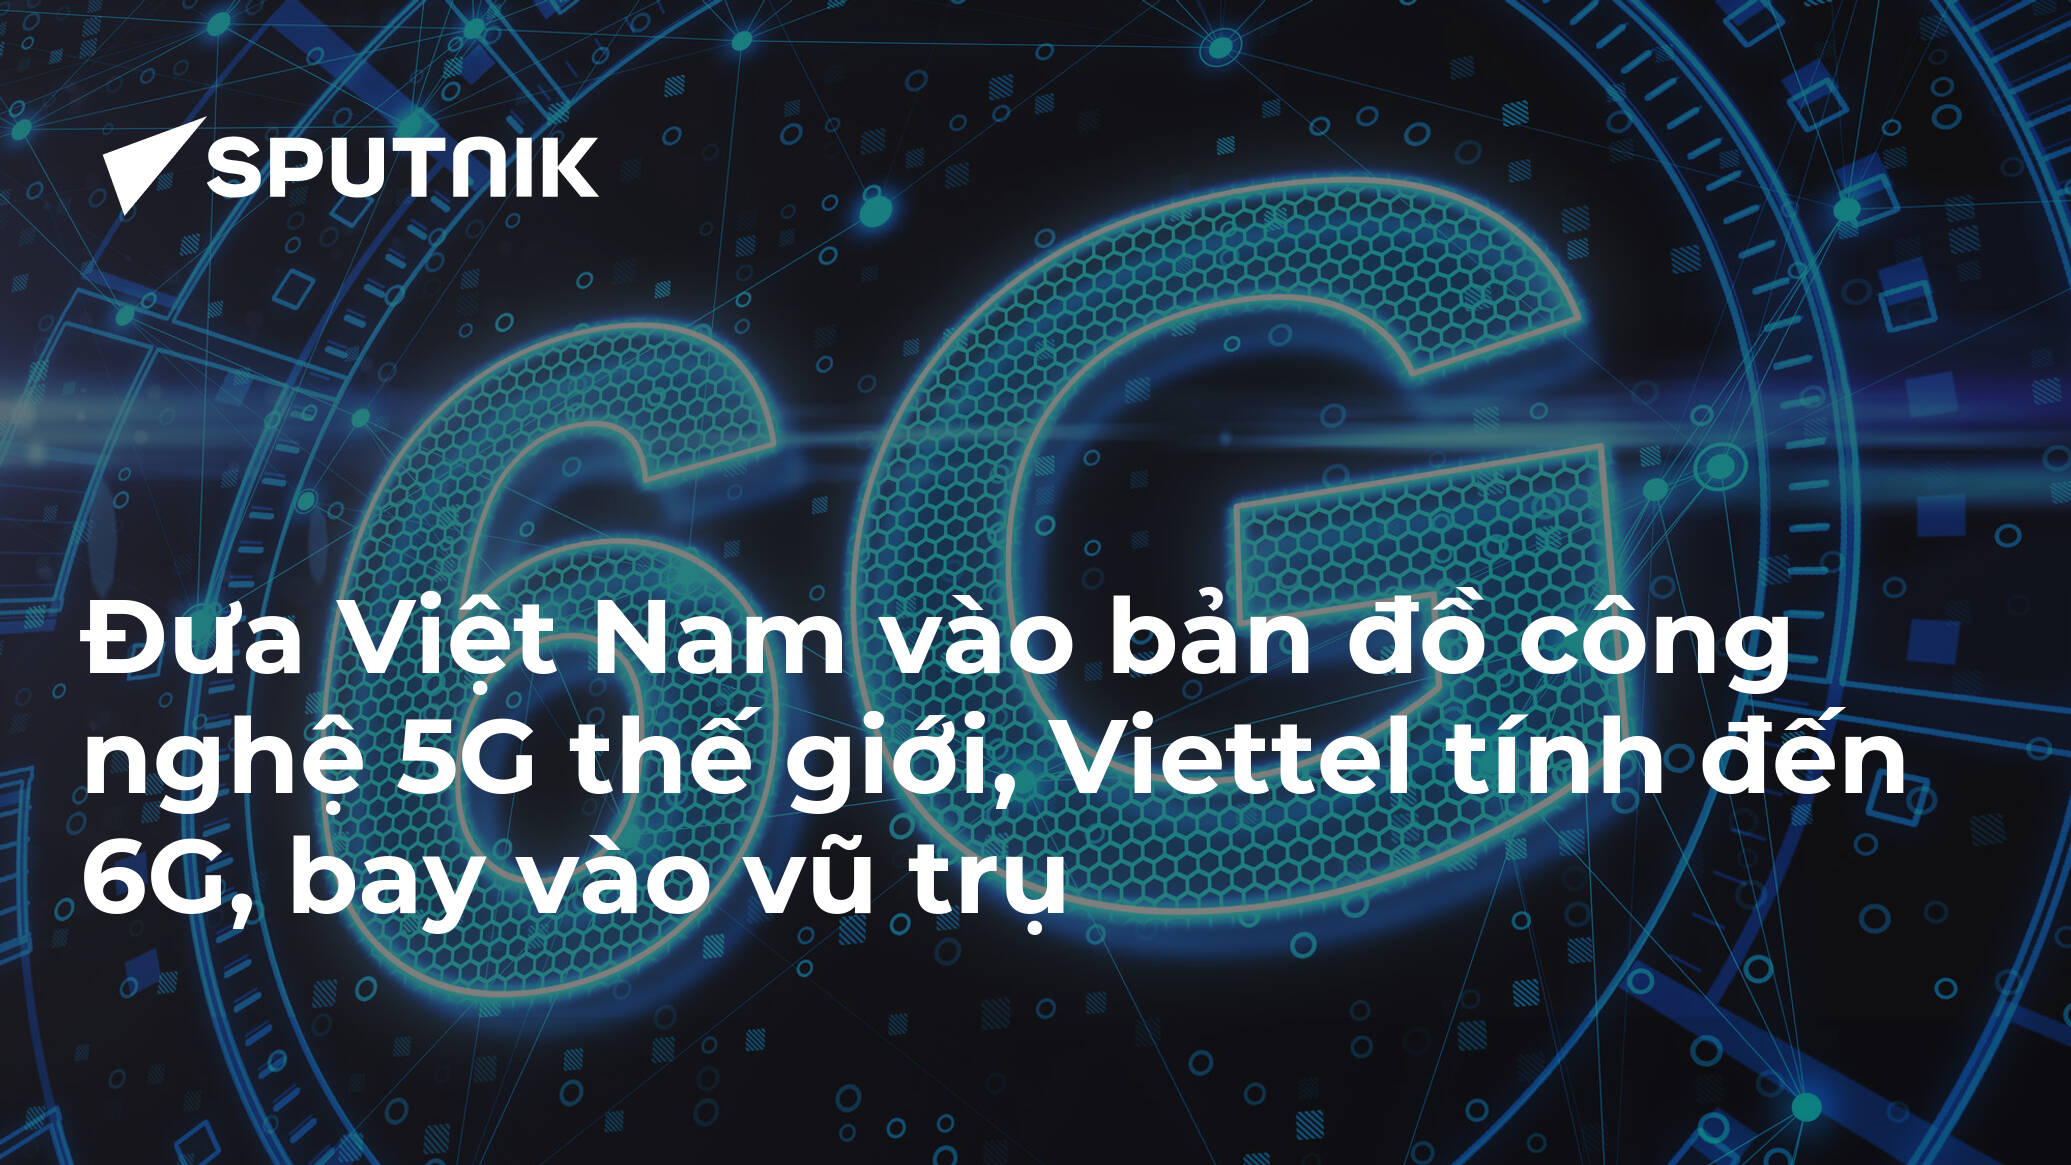 Việt Nam đang nghiên cứu và phát triển mạng 6G. Đây là một bước đột phá trong công nghệ, giúp đưa Việt Nam vào bản đồ công nghệ 5G thế giới. Khách hàng sẽ được trải nghiệm những công nghệ tiên tiến và có truyền tải dữ liệu siêu nhanh trên toàn quốc.